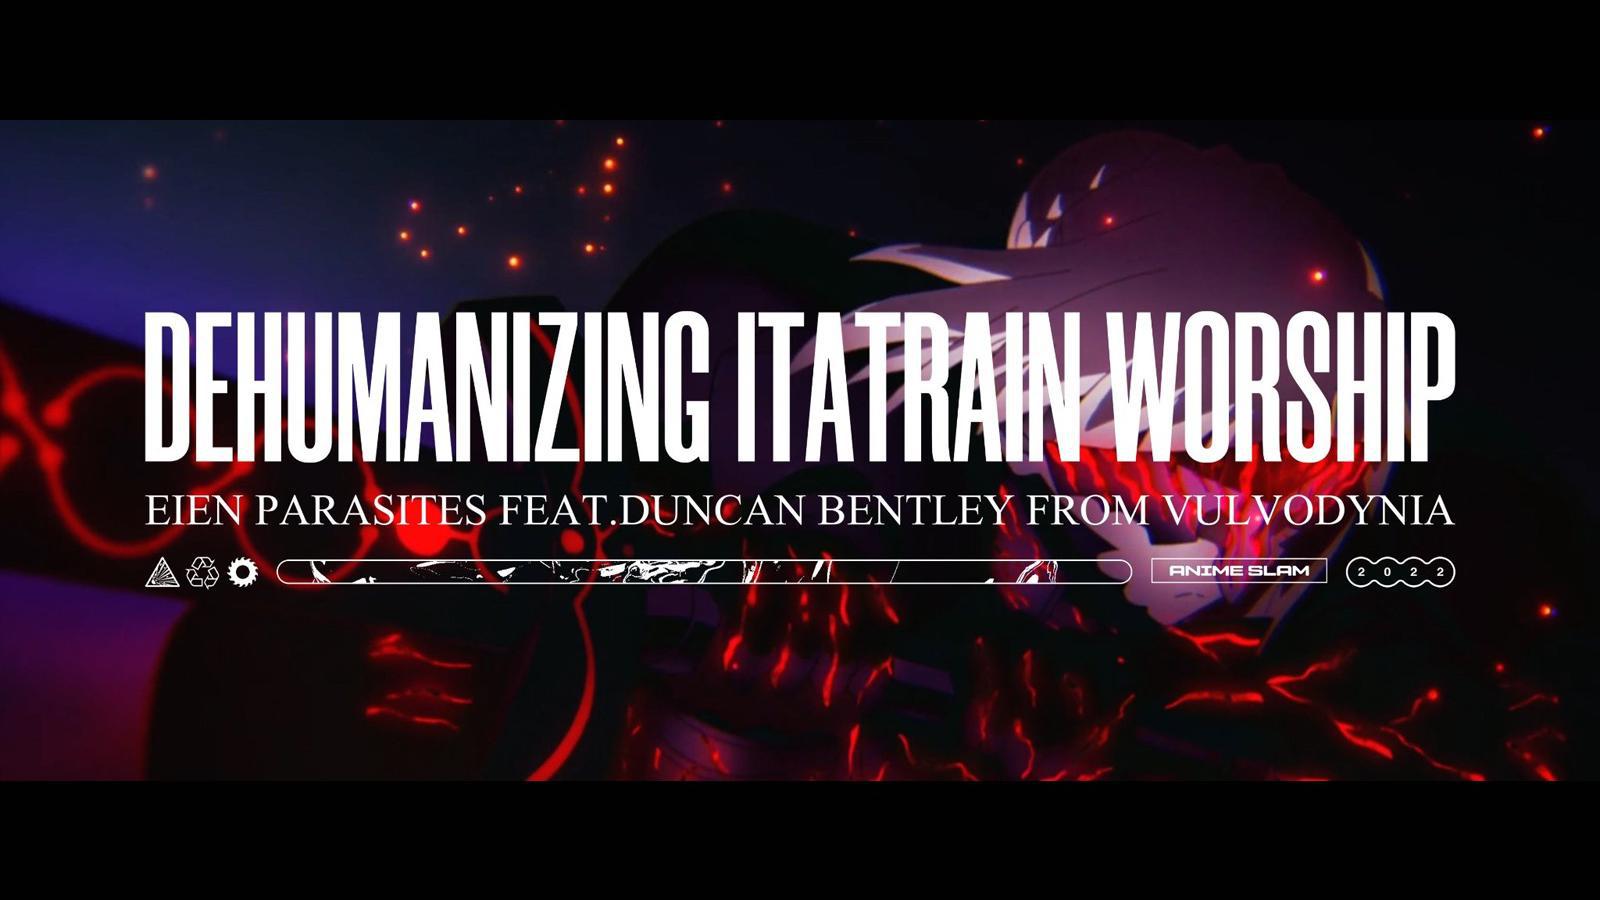 Dehumanizing Itatrain Worship - Eien Parasites (feat. Duncan Bentley)